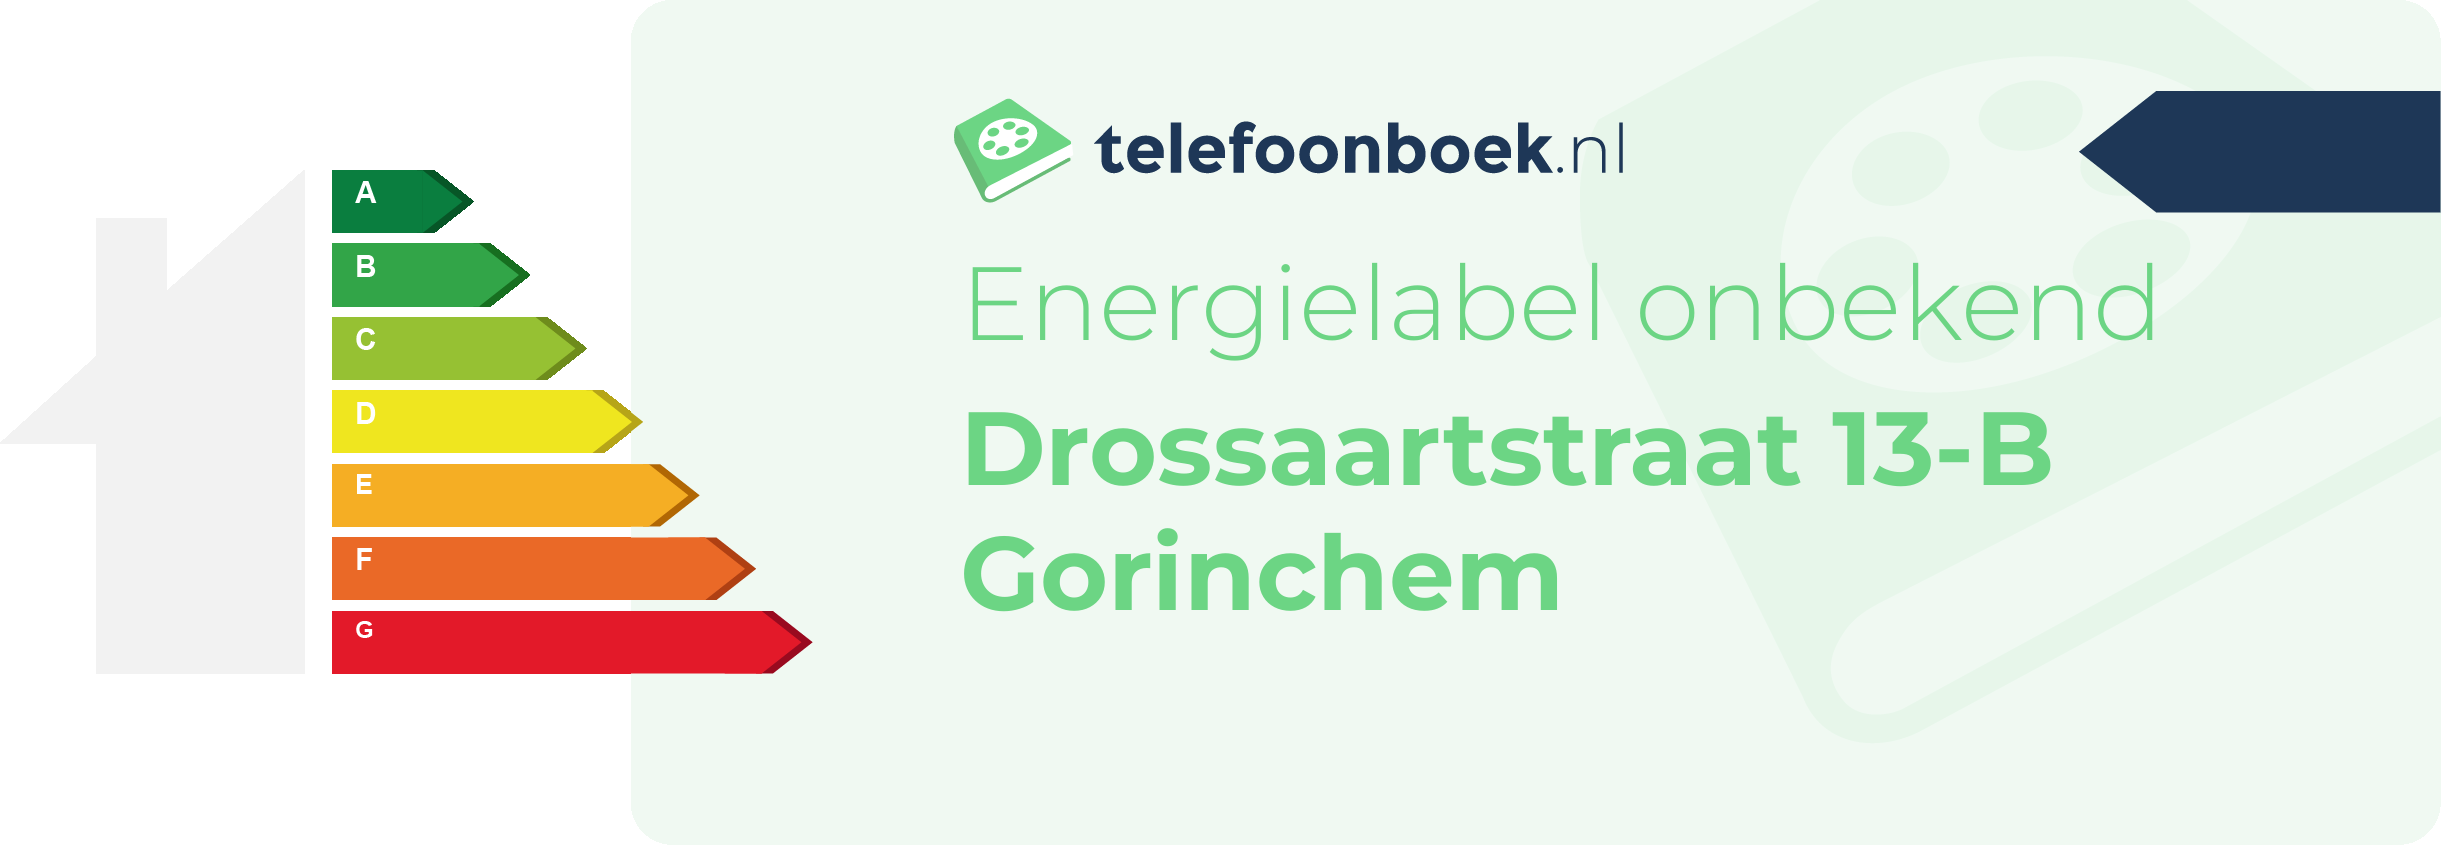 Energielabel Drossaartstraat 13-B Gorinchem